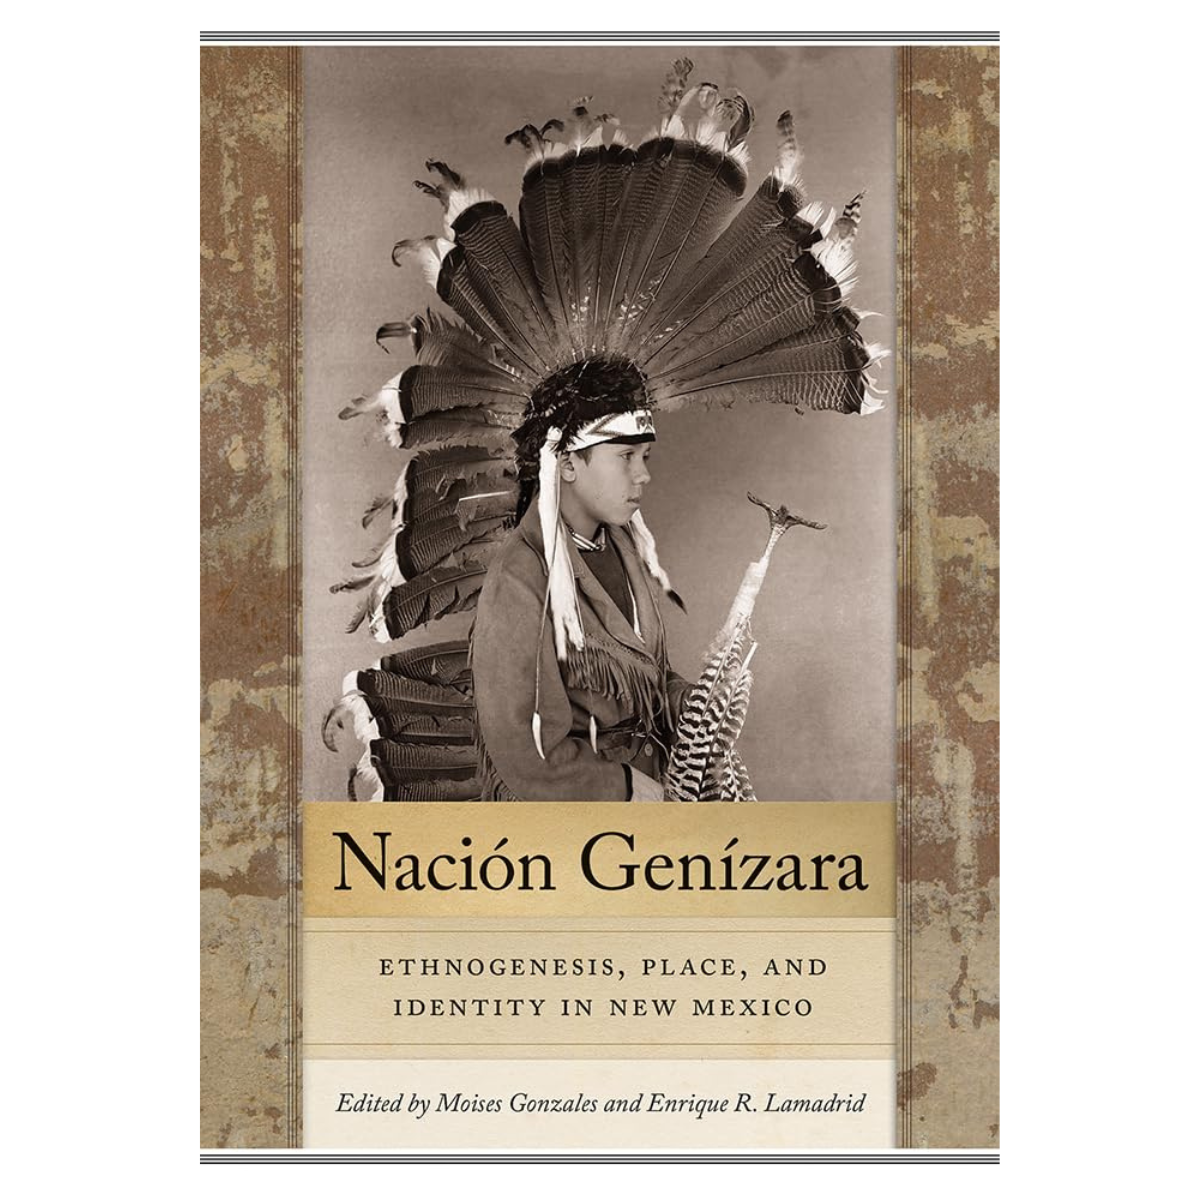 Nación Genízara: Ethnogenesis, Place, and Identity in New Mexico